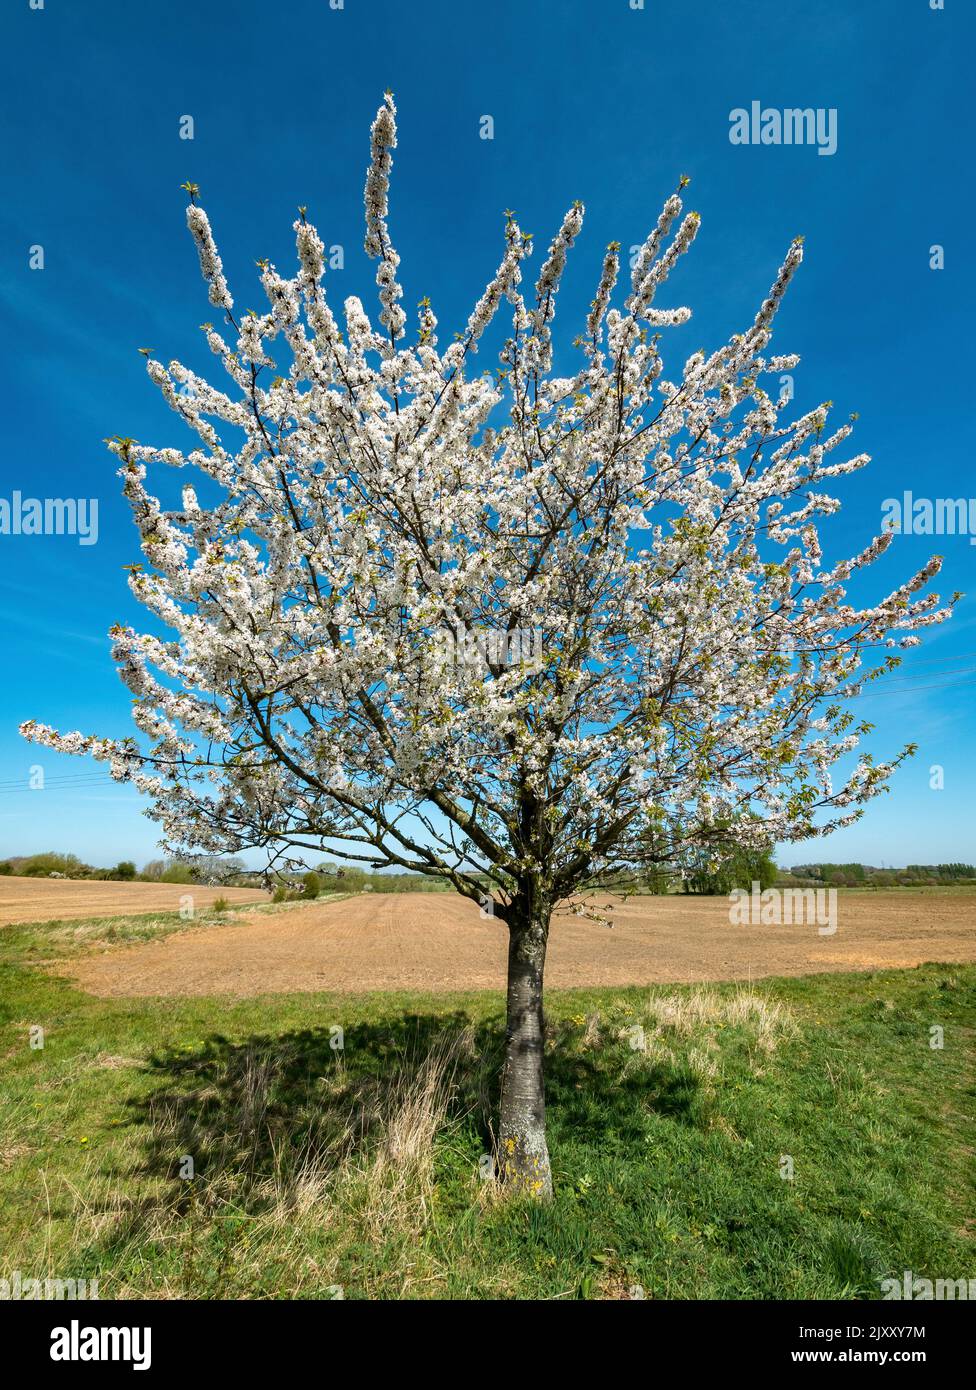 Un solo cerezo (Prunus) con cerezo blanco en flor con campos de granja y cielo azul detrás, Leicestershire, Reino Unido Foto de stock